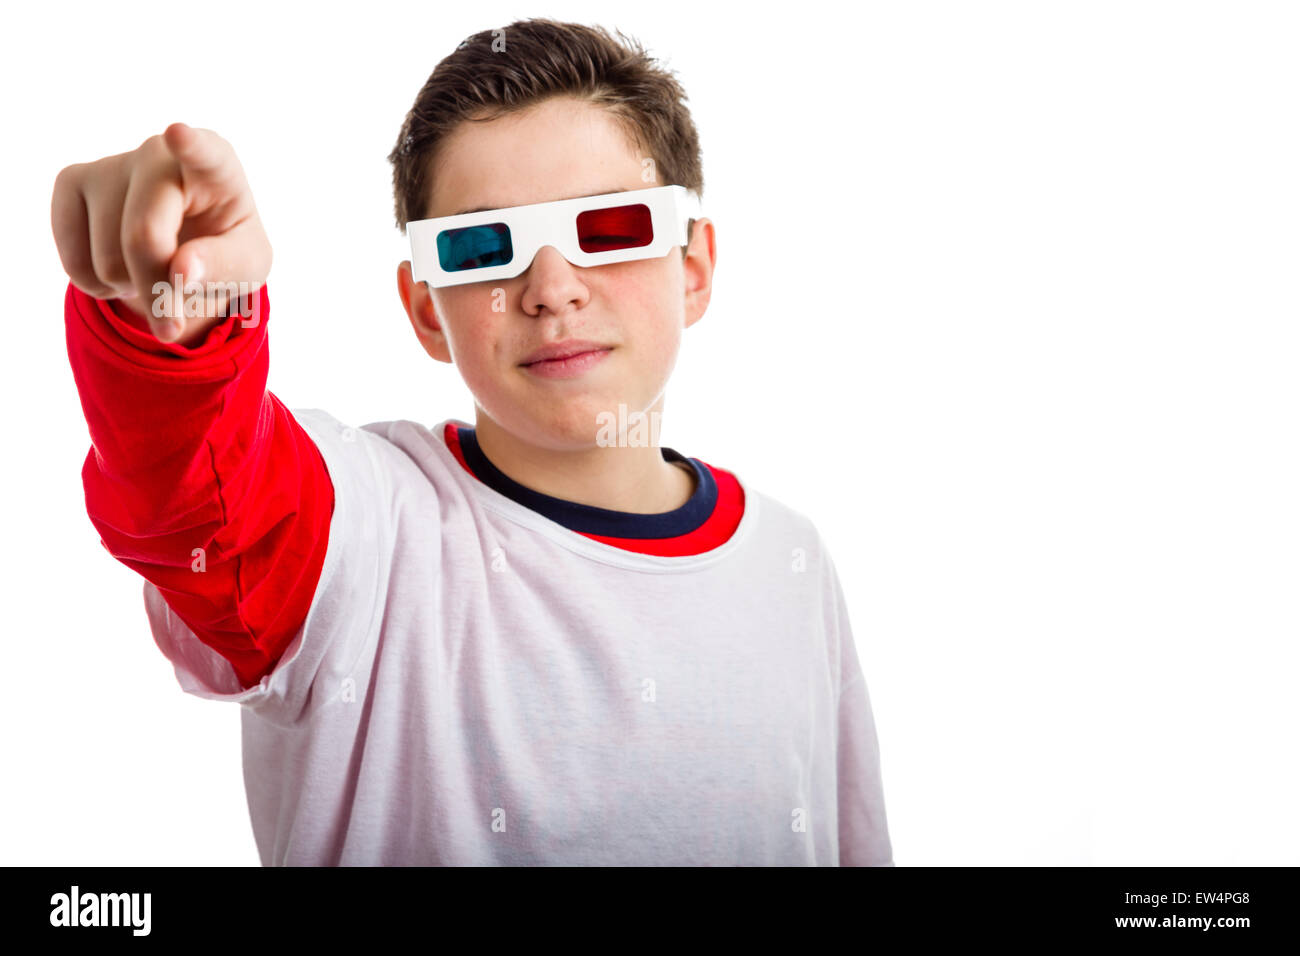 Un muchacho caucásico lleva un par de cine 3D con googles de papel rojo y azul cielo buscando lentes y tranquilo y confiado de puntos al espectador con la mano derecha Foto de stock